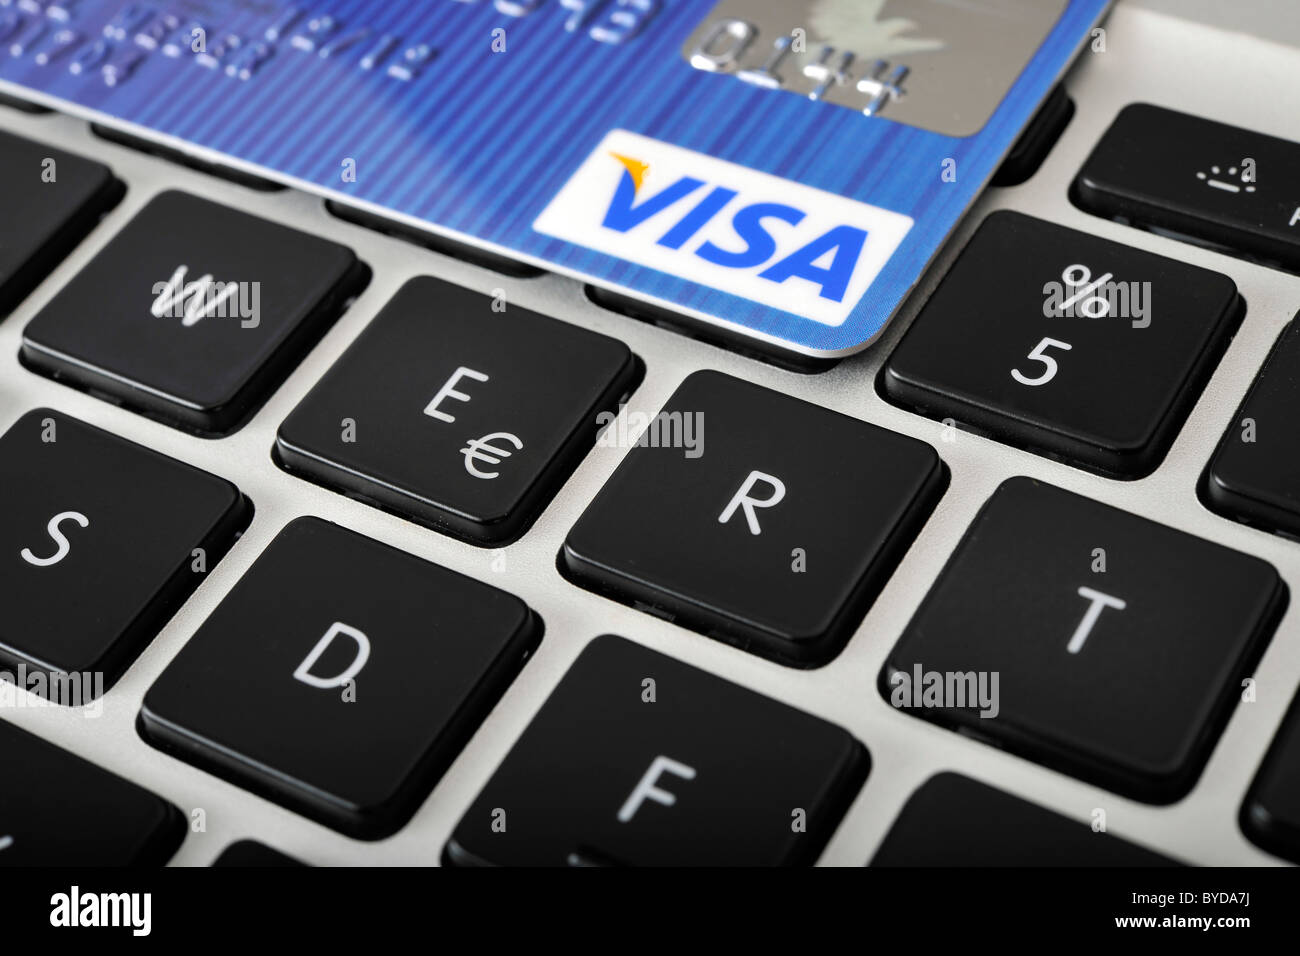 Les lettres WERT, Allemand pour la valeur, avec une carte de crédit VISA  sur le clavier d'un ordinateur portable, PC, image symbolique pour Internet  Photo Stock - Alamy